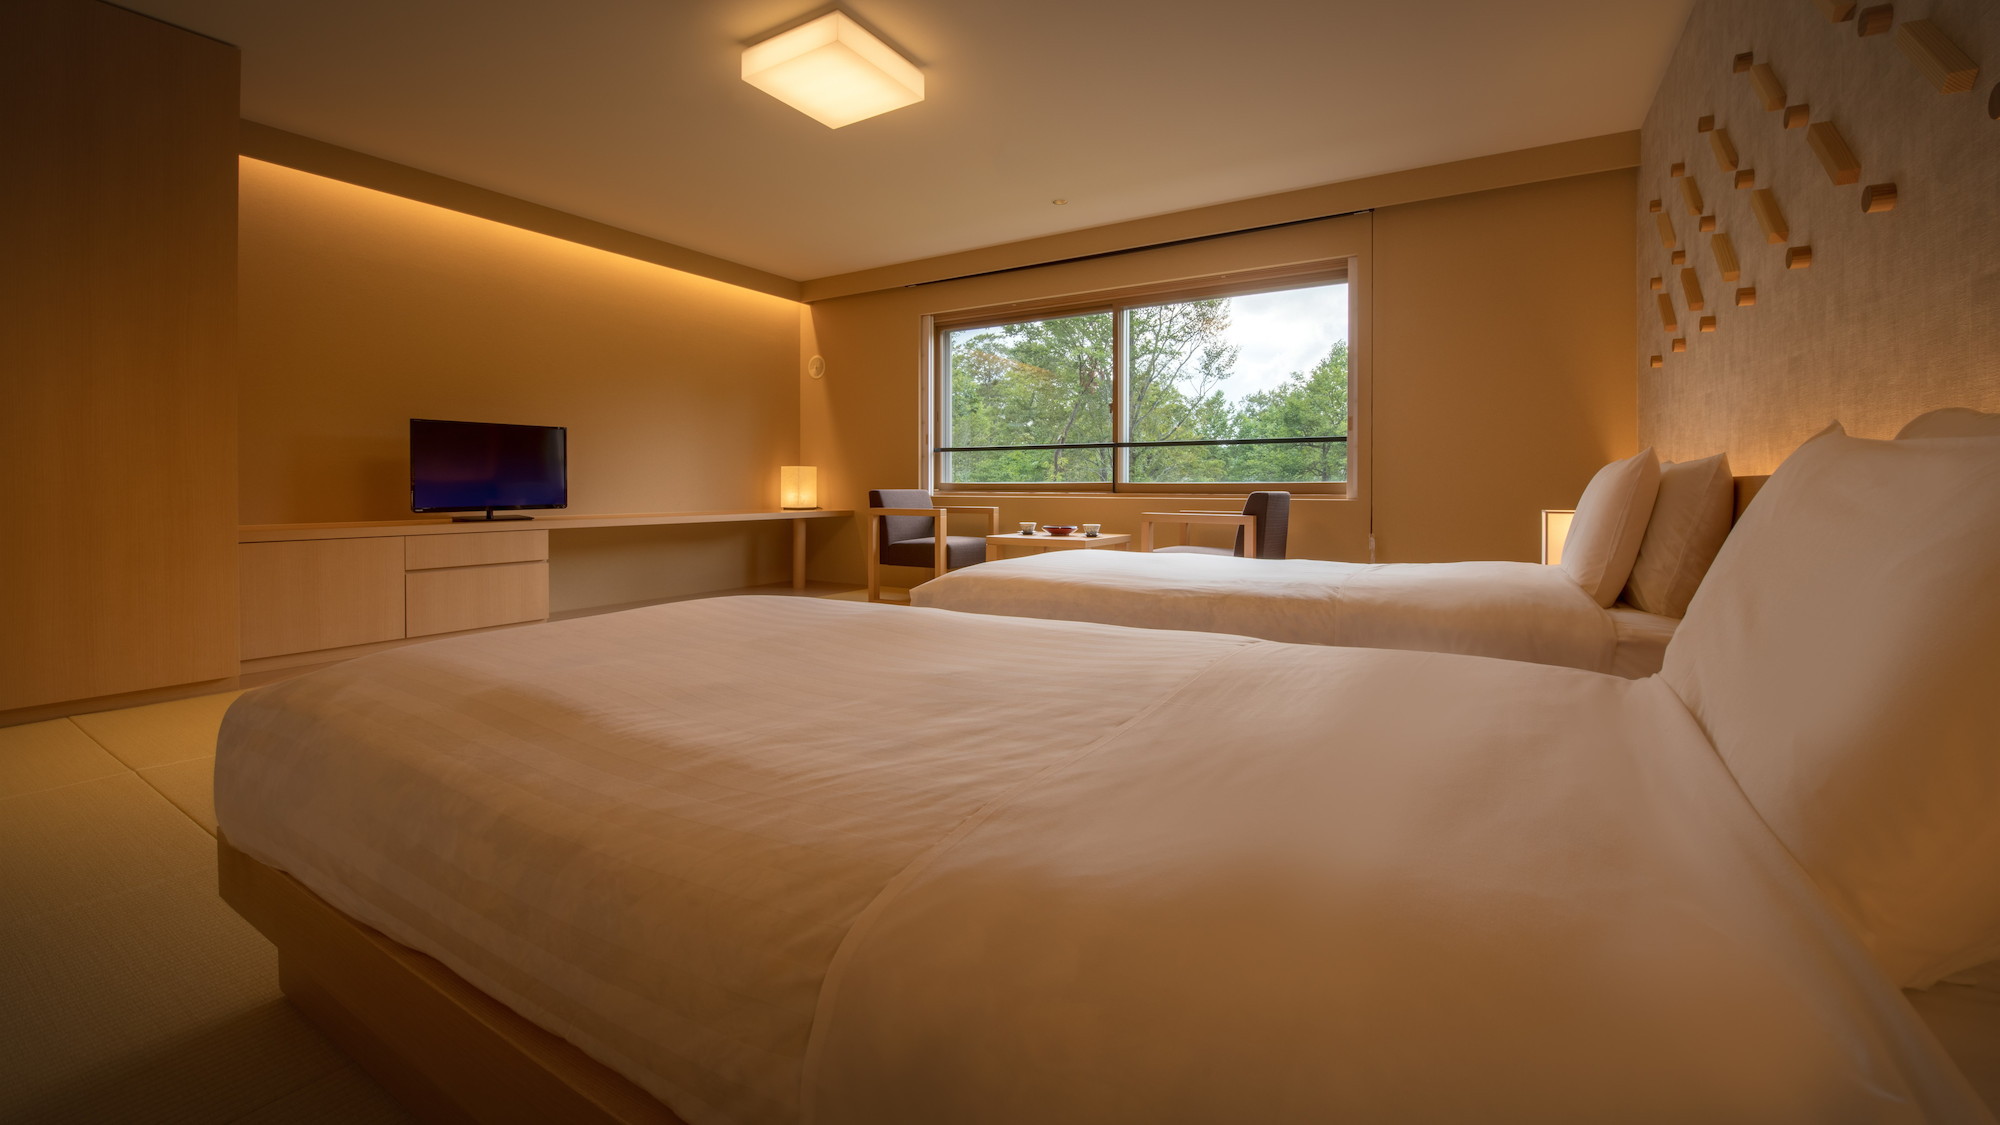 【リニューアル和室ツインルーム】ベッドは過ごしやすいシモンズ社製のマットレスにローベッドを導入